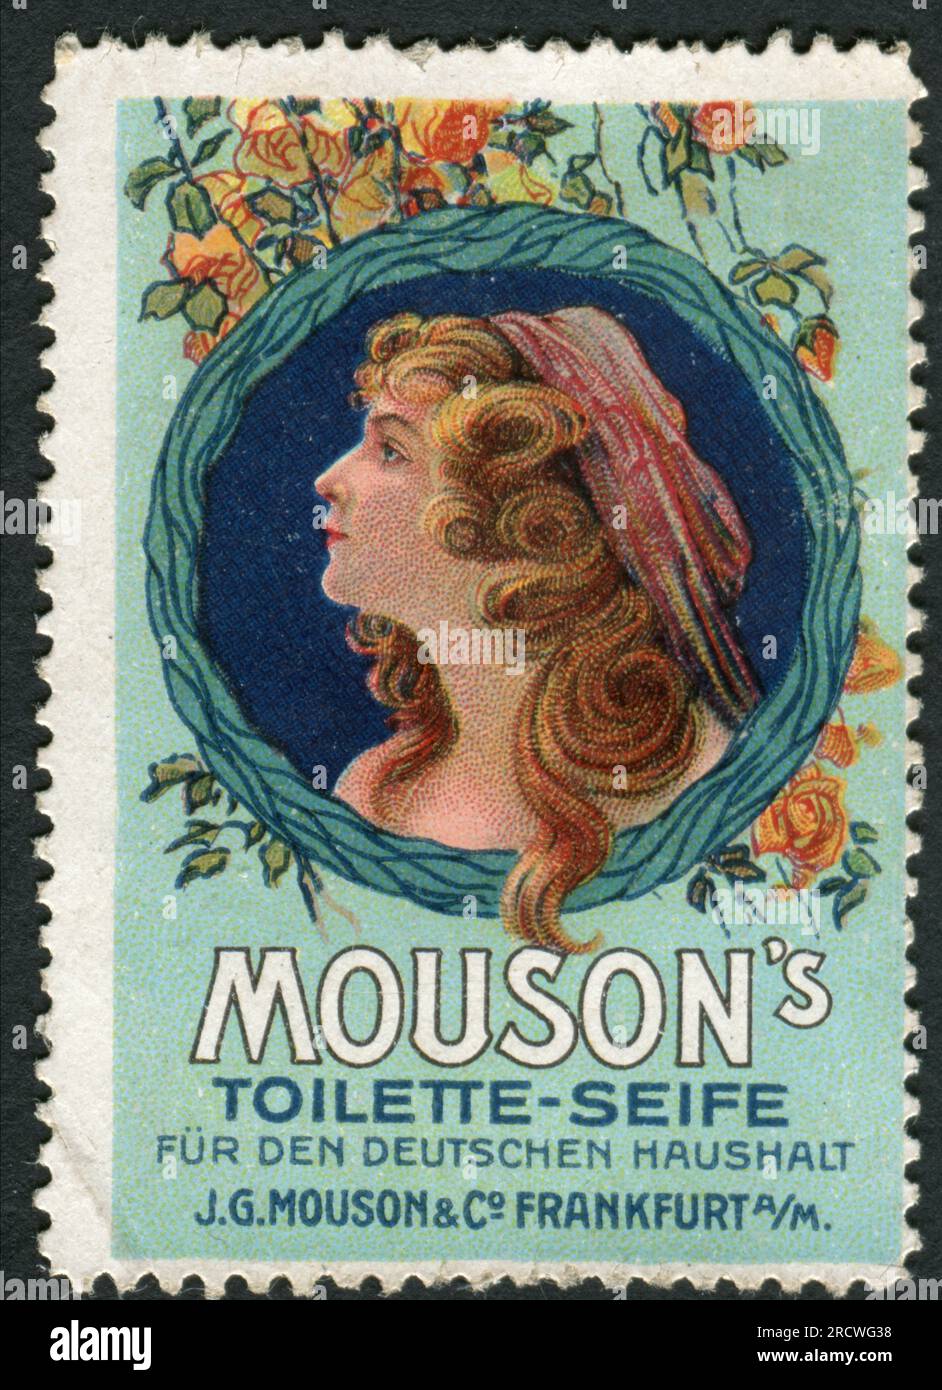 Publicité, cosmétiques, savon de toilette pour la maison allemande, J. G. Mouson und Co., DROITS-AUTORISATION-INFO-NON-DISPONIBLE Banque D'Images